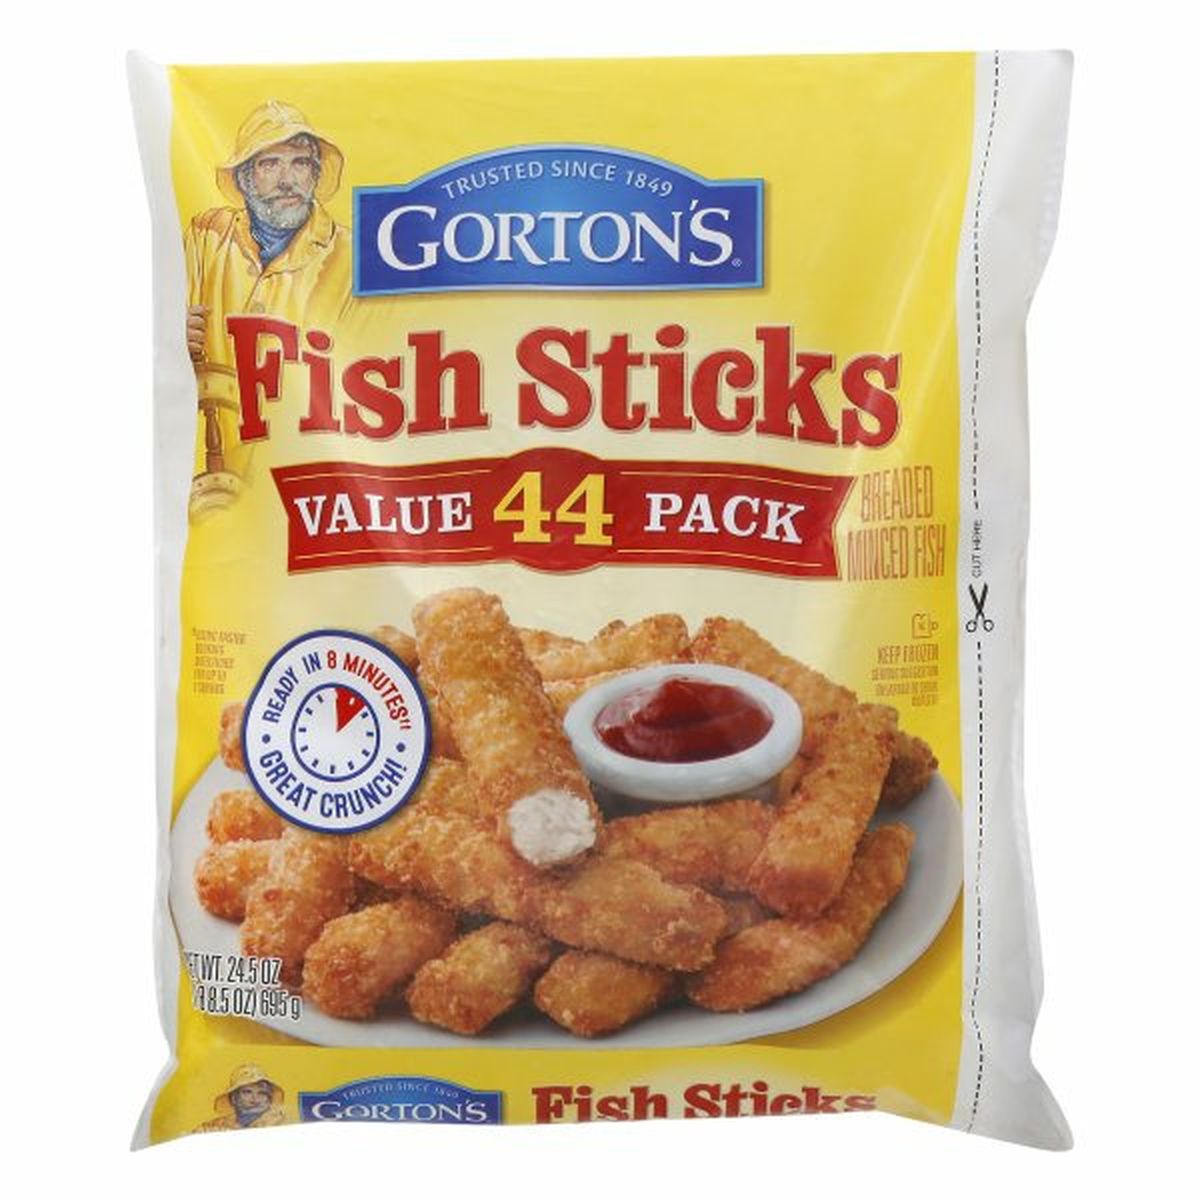 Calories in Gorton's Fish Sticks, Value Pack